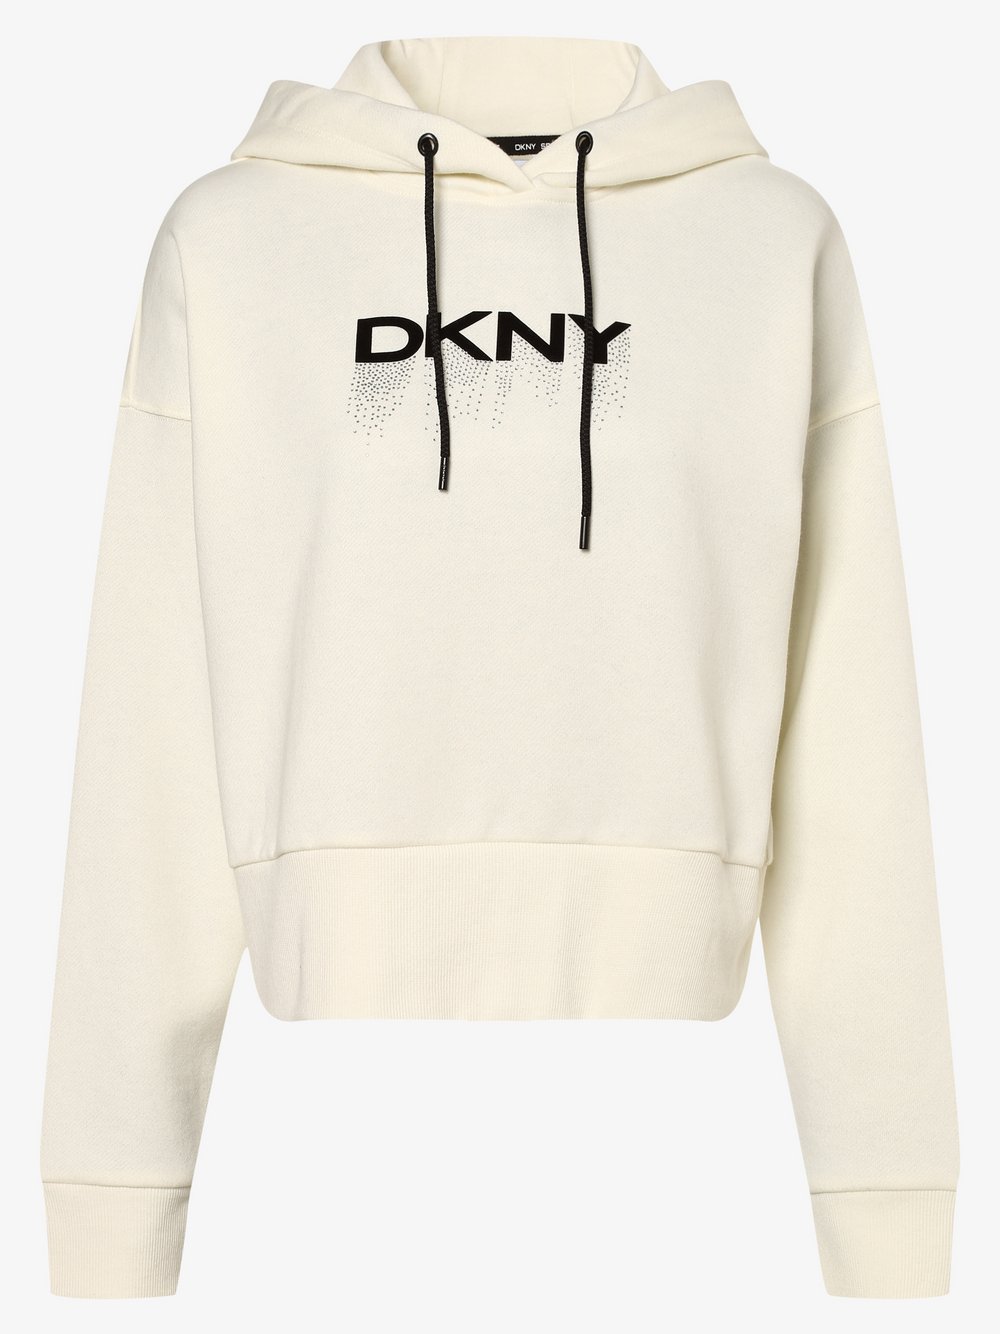 DKNY - Damska bluza z kapturem, biały